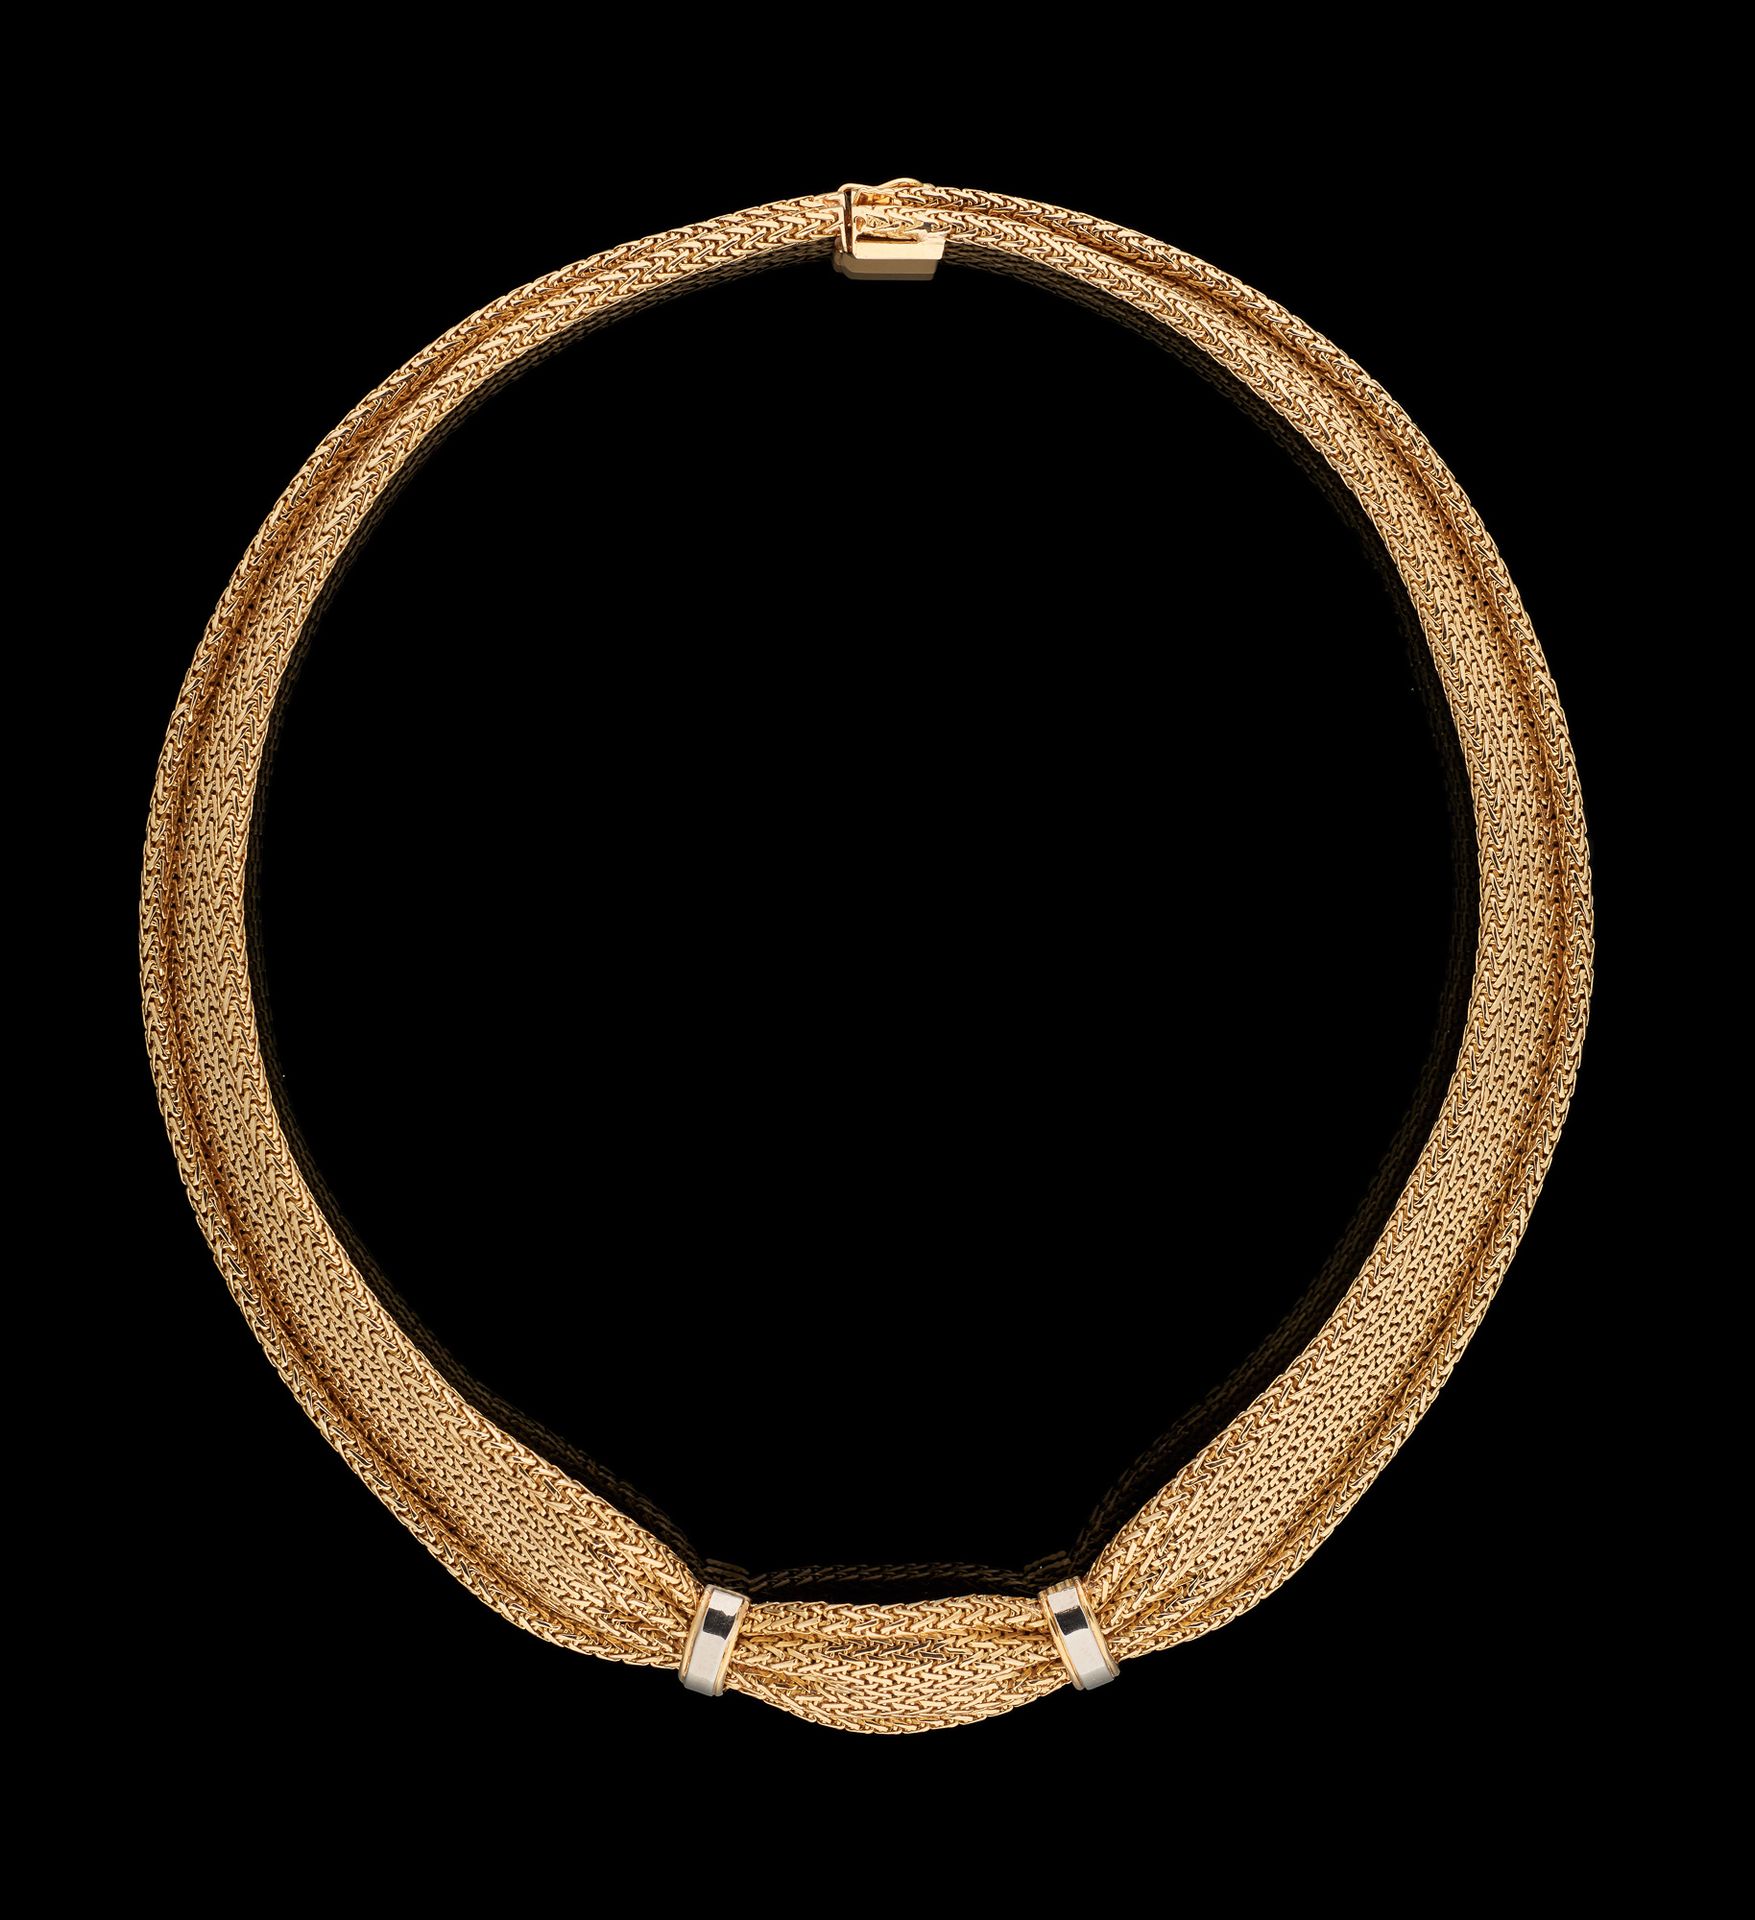 Circa 1950. Schmuckstück: Halskette aus Gelbgold.

Bruttogewicht: +/- 74 Gramm.